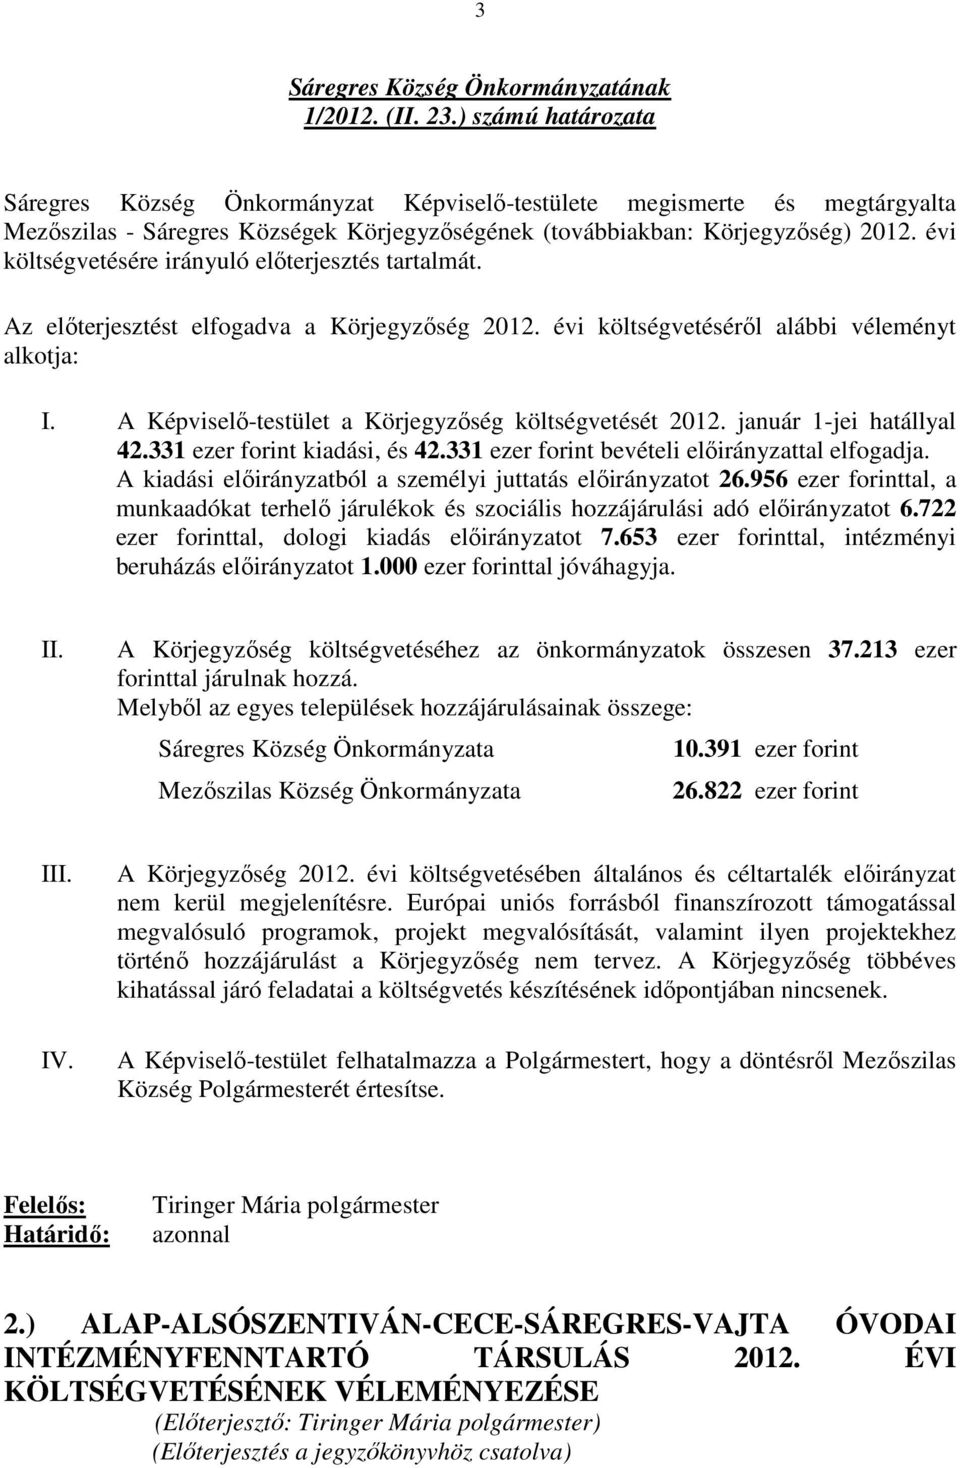 A Képviselı-testület a Körjegyzıség költségvetését 2012. január 1-jei hatállyal 42.331 ezer forint kiadási, és 42.331 ezer forint bevételi elıirányzattal elfogadja.